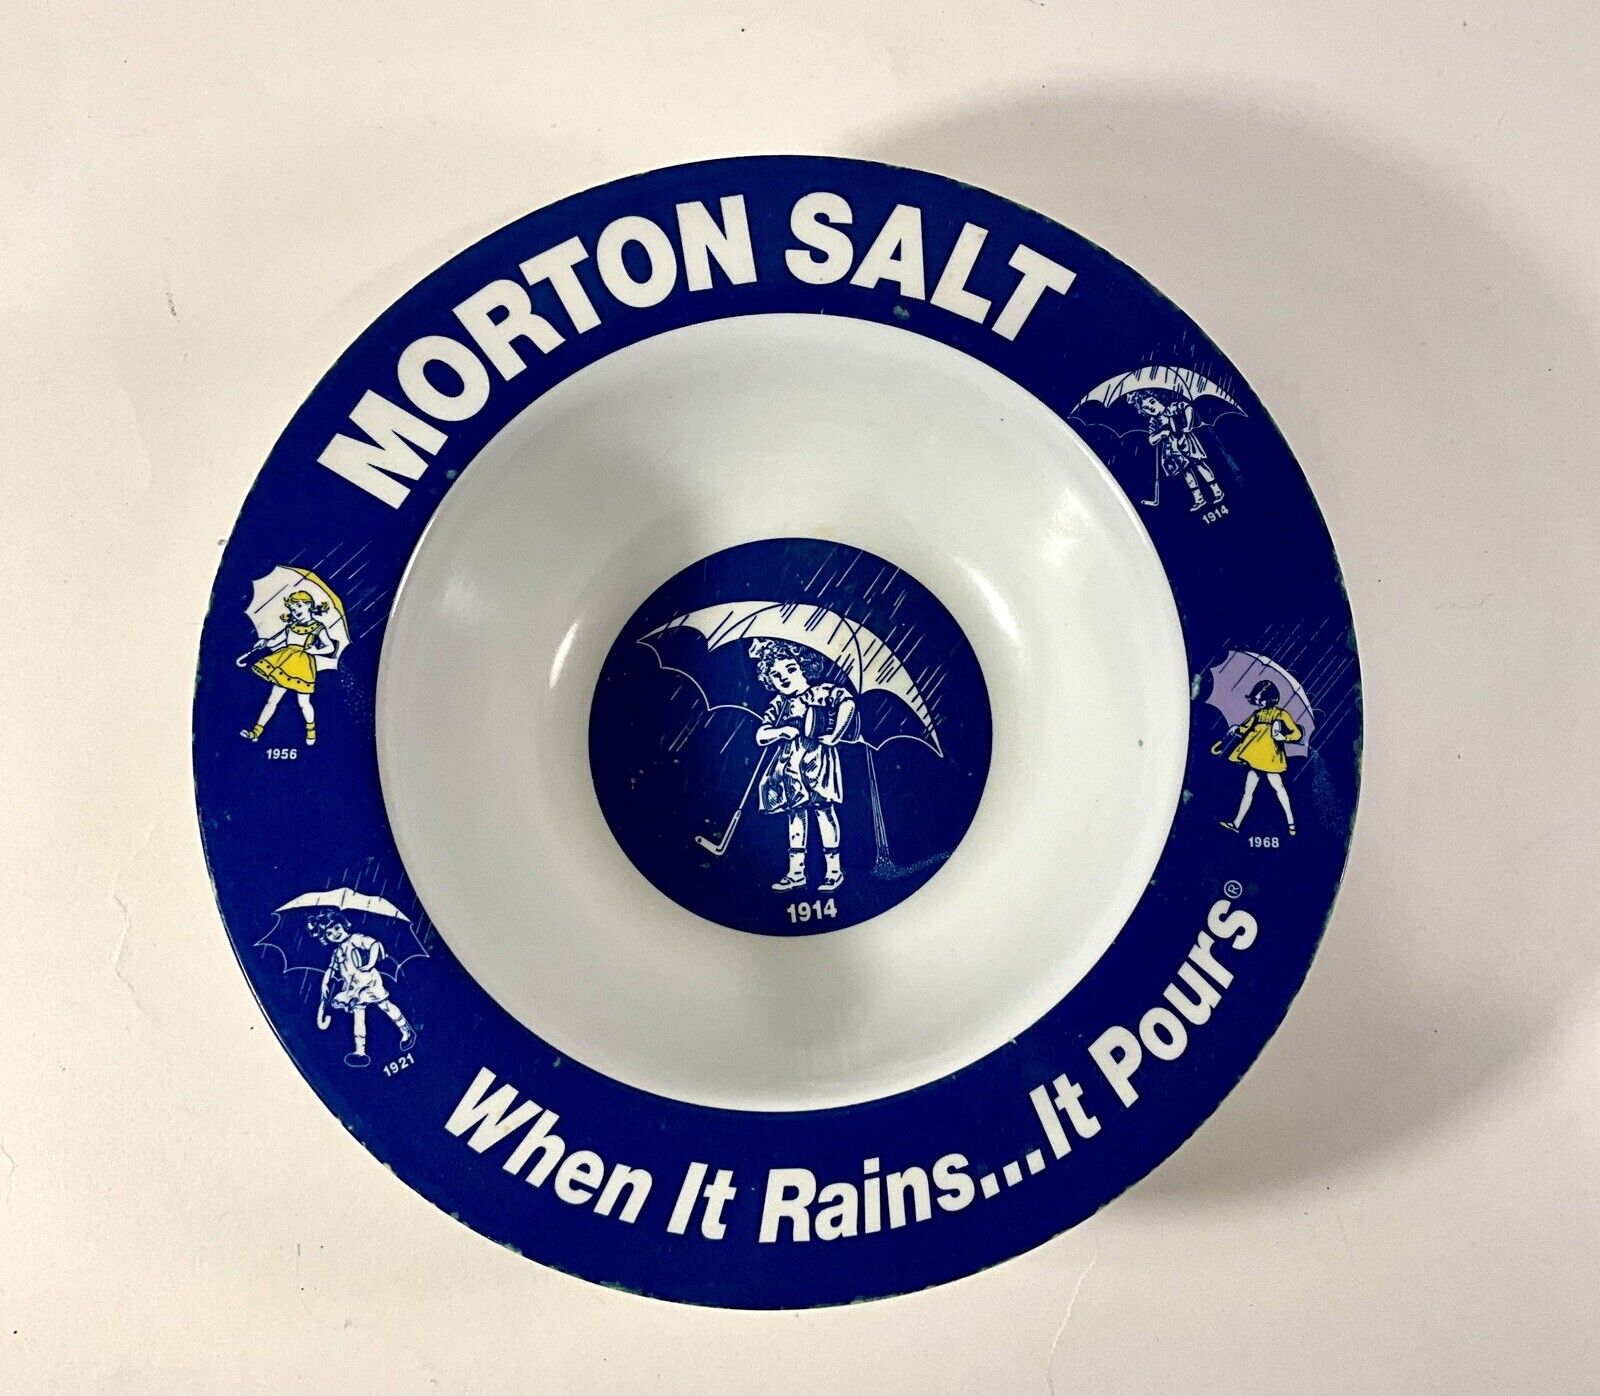 Morton Salt “When It Rains It Purs” Bowl